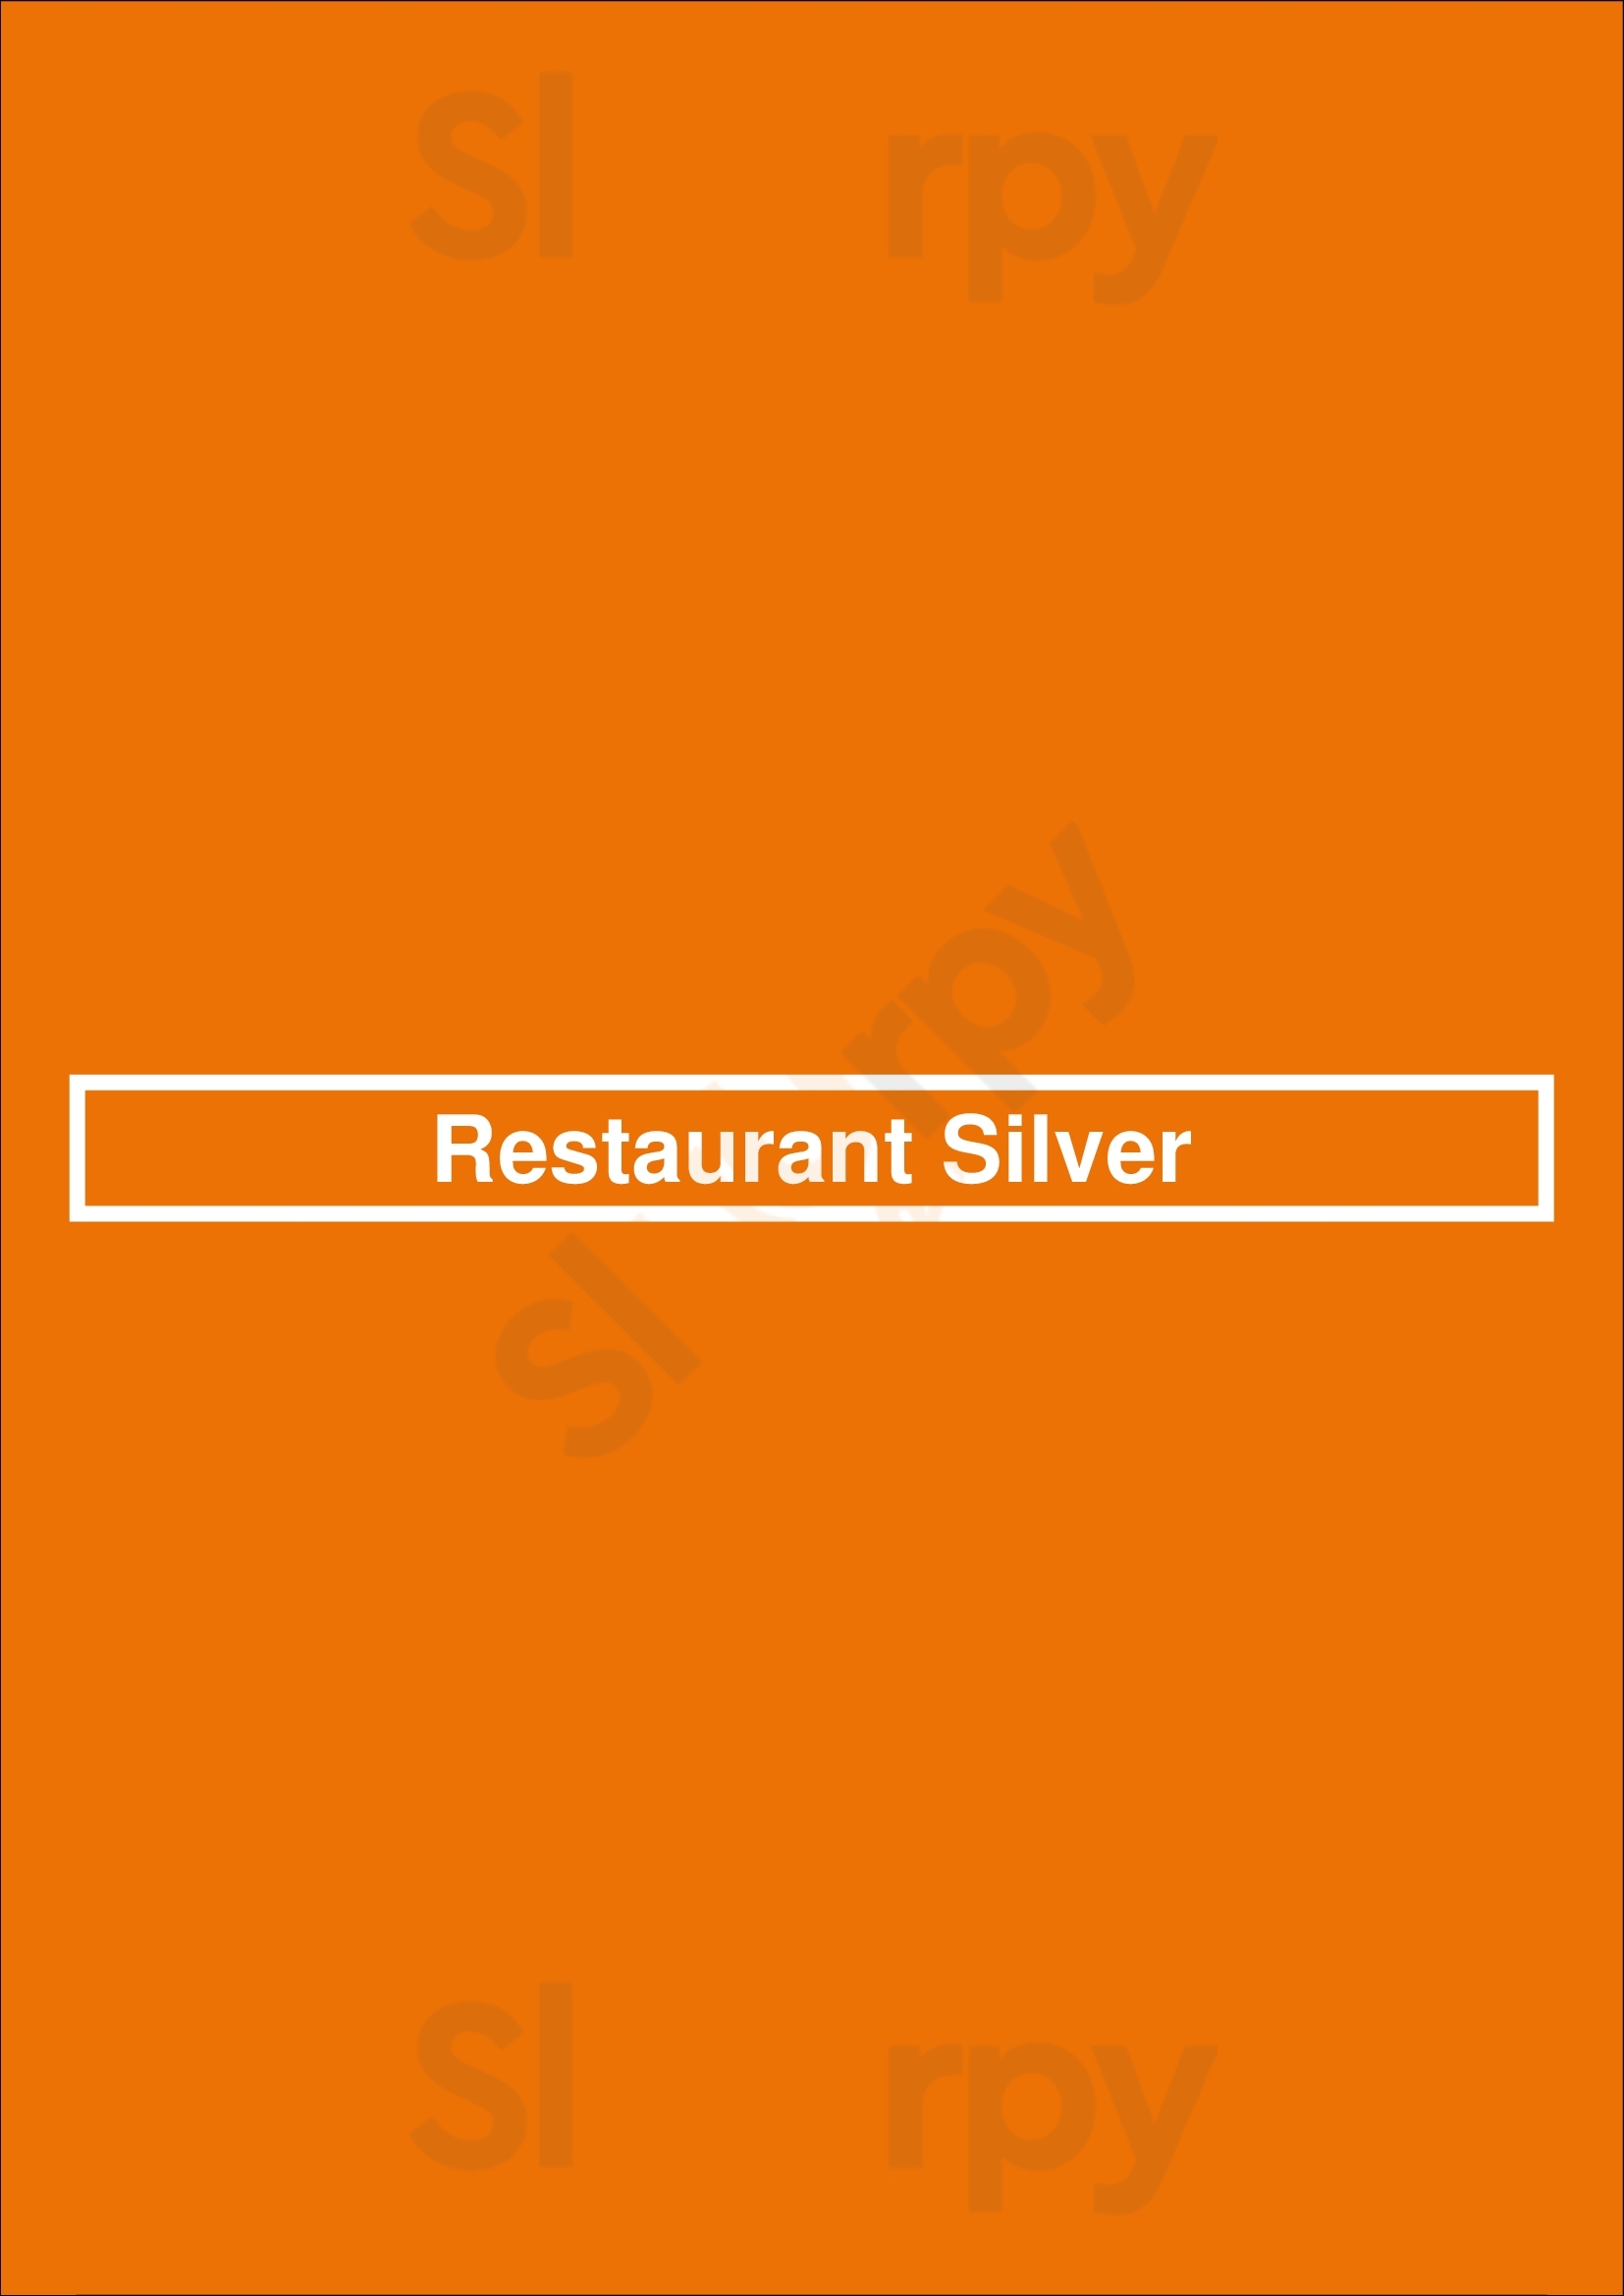 Restaurant Silver Lelystad Menu - 1